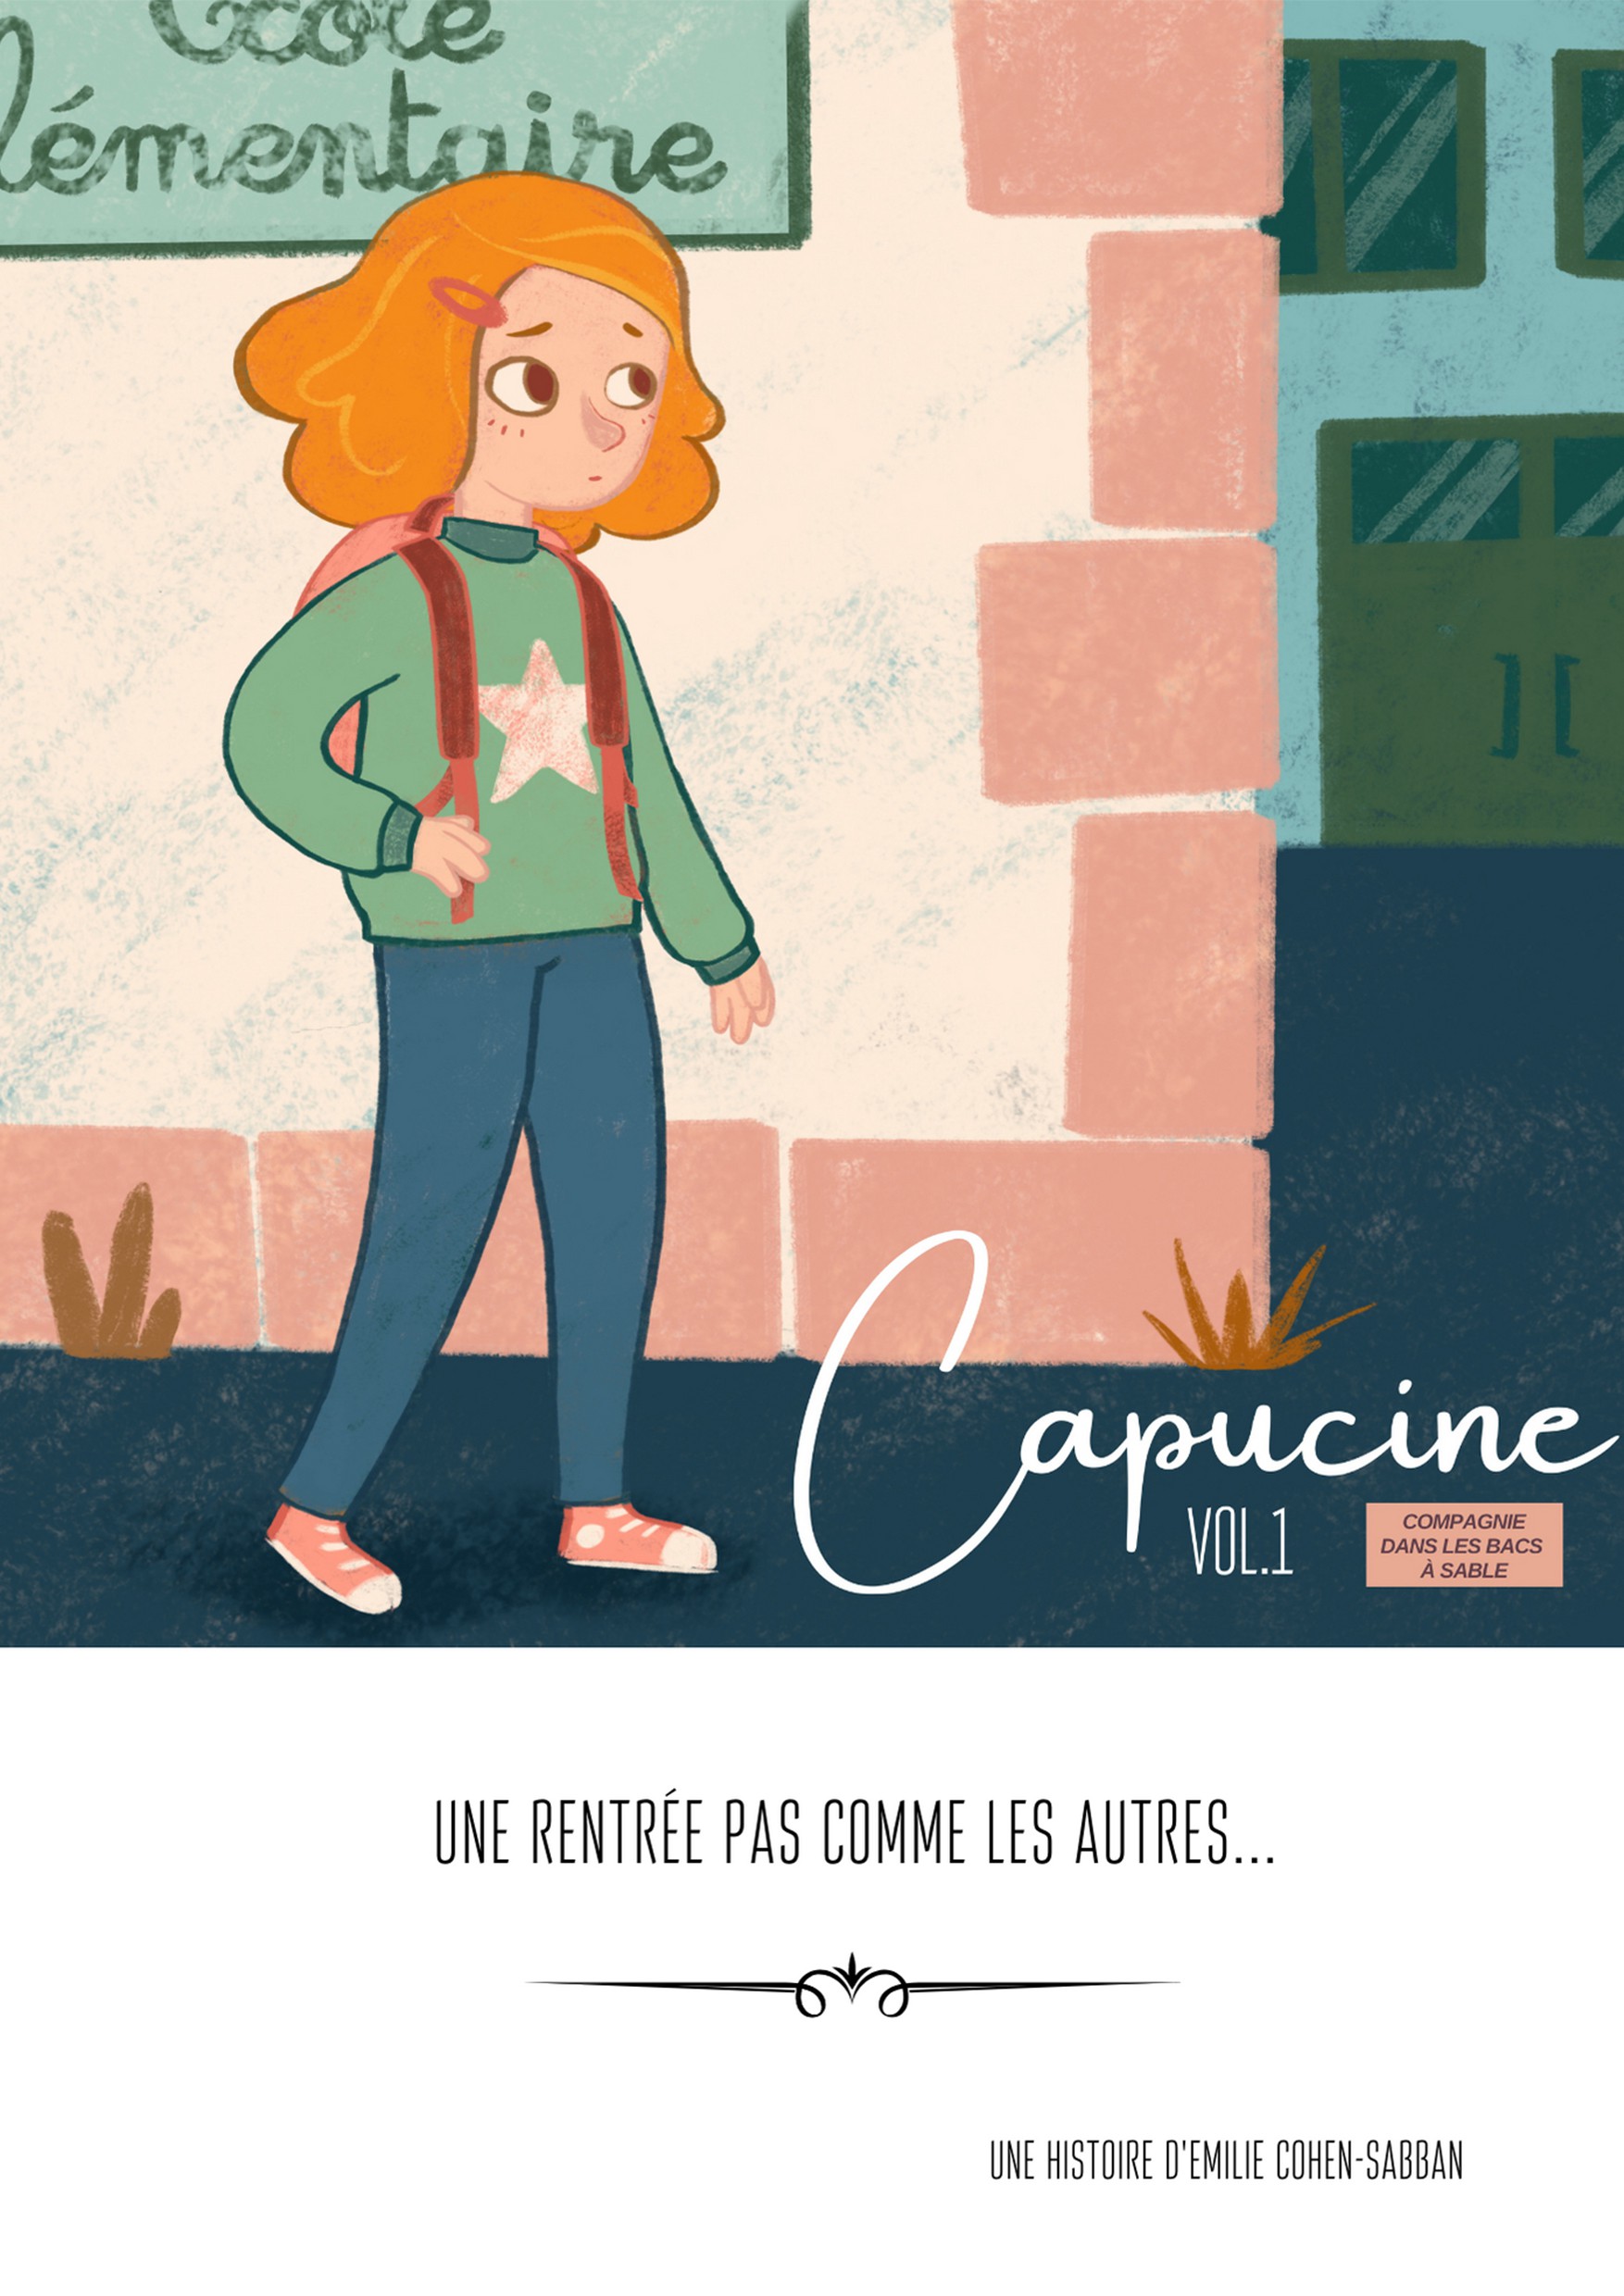 Capucine Vol.1